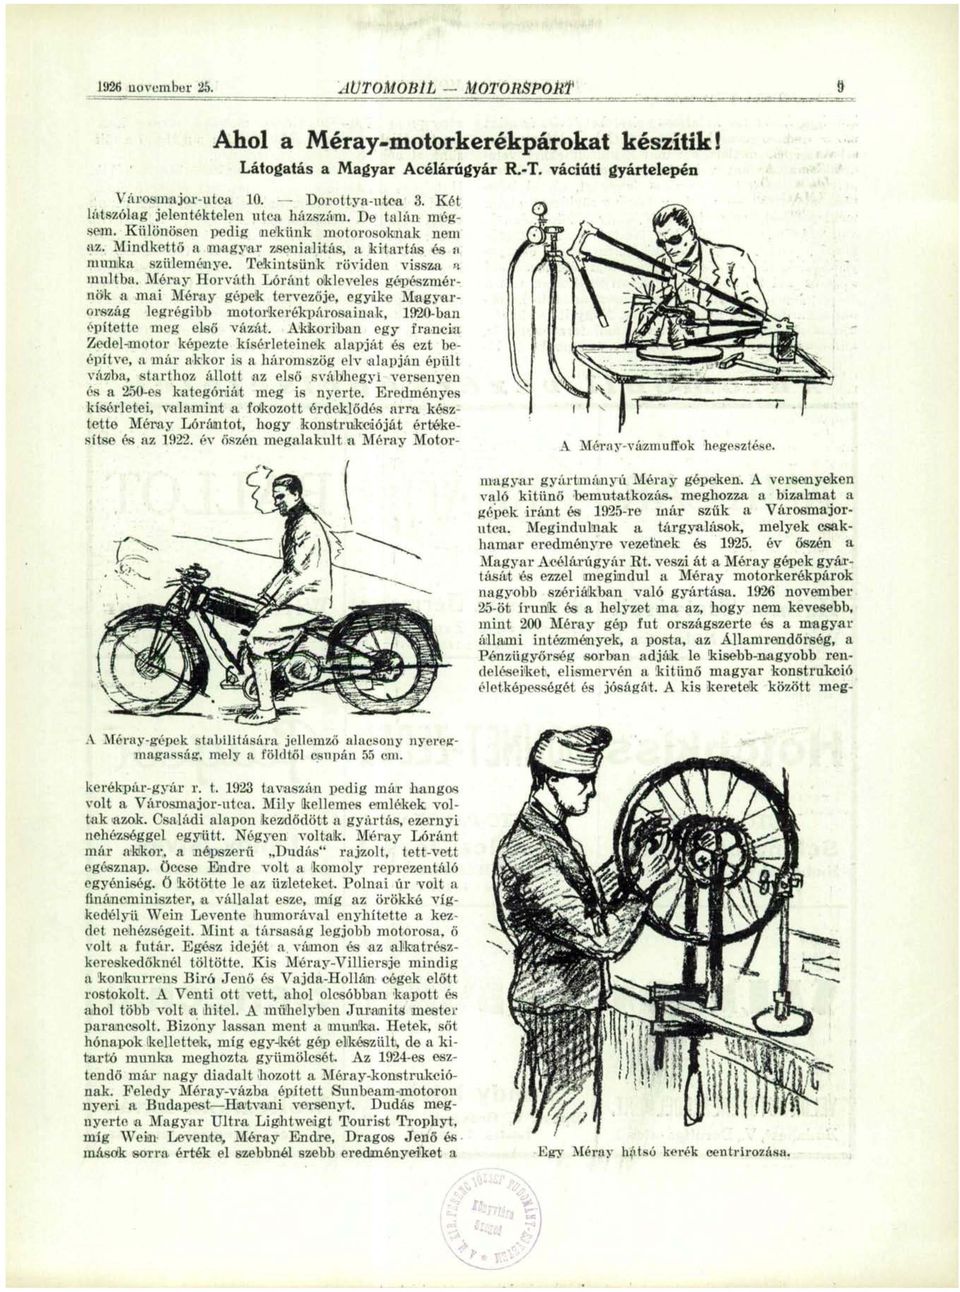 Tekintsünk röviden vissza a múltba. Méray Horváth Lóránt okleveles gépészmérnök a mai Méray gépek tervezője, egyike Magyarország legrégibb motorkerékpárosainak, 1920-ban építette meg első vázát.